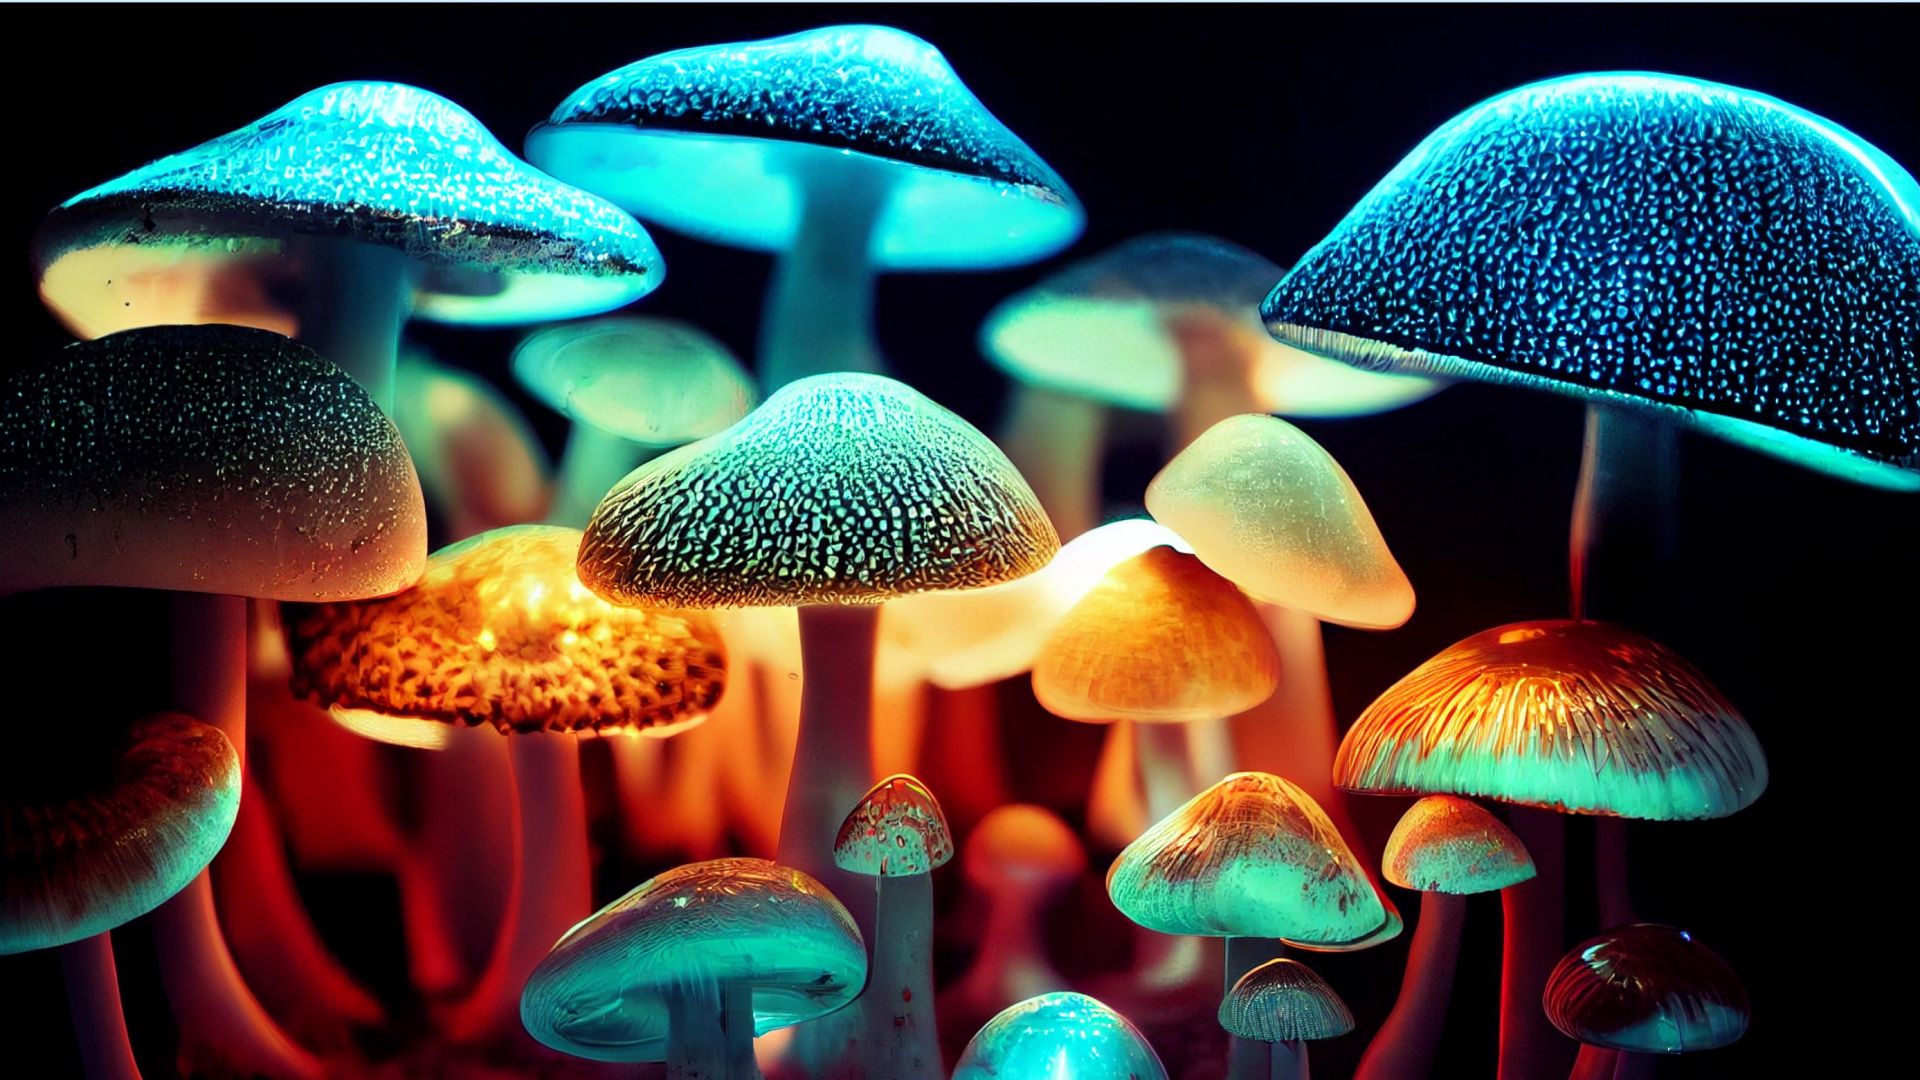 Mushrooms glowing in a dark room. 